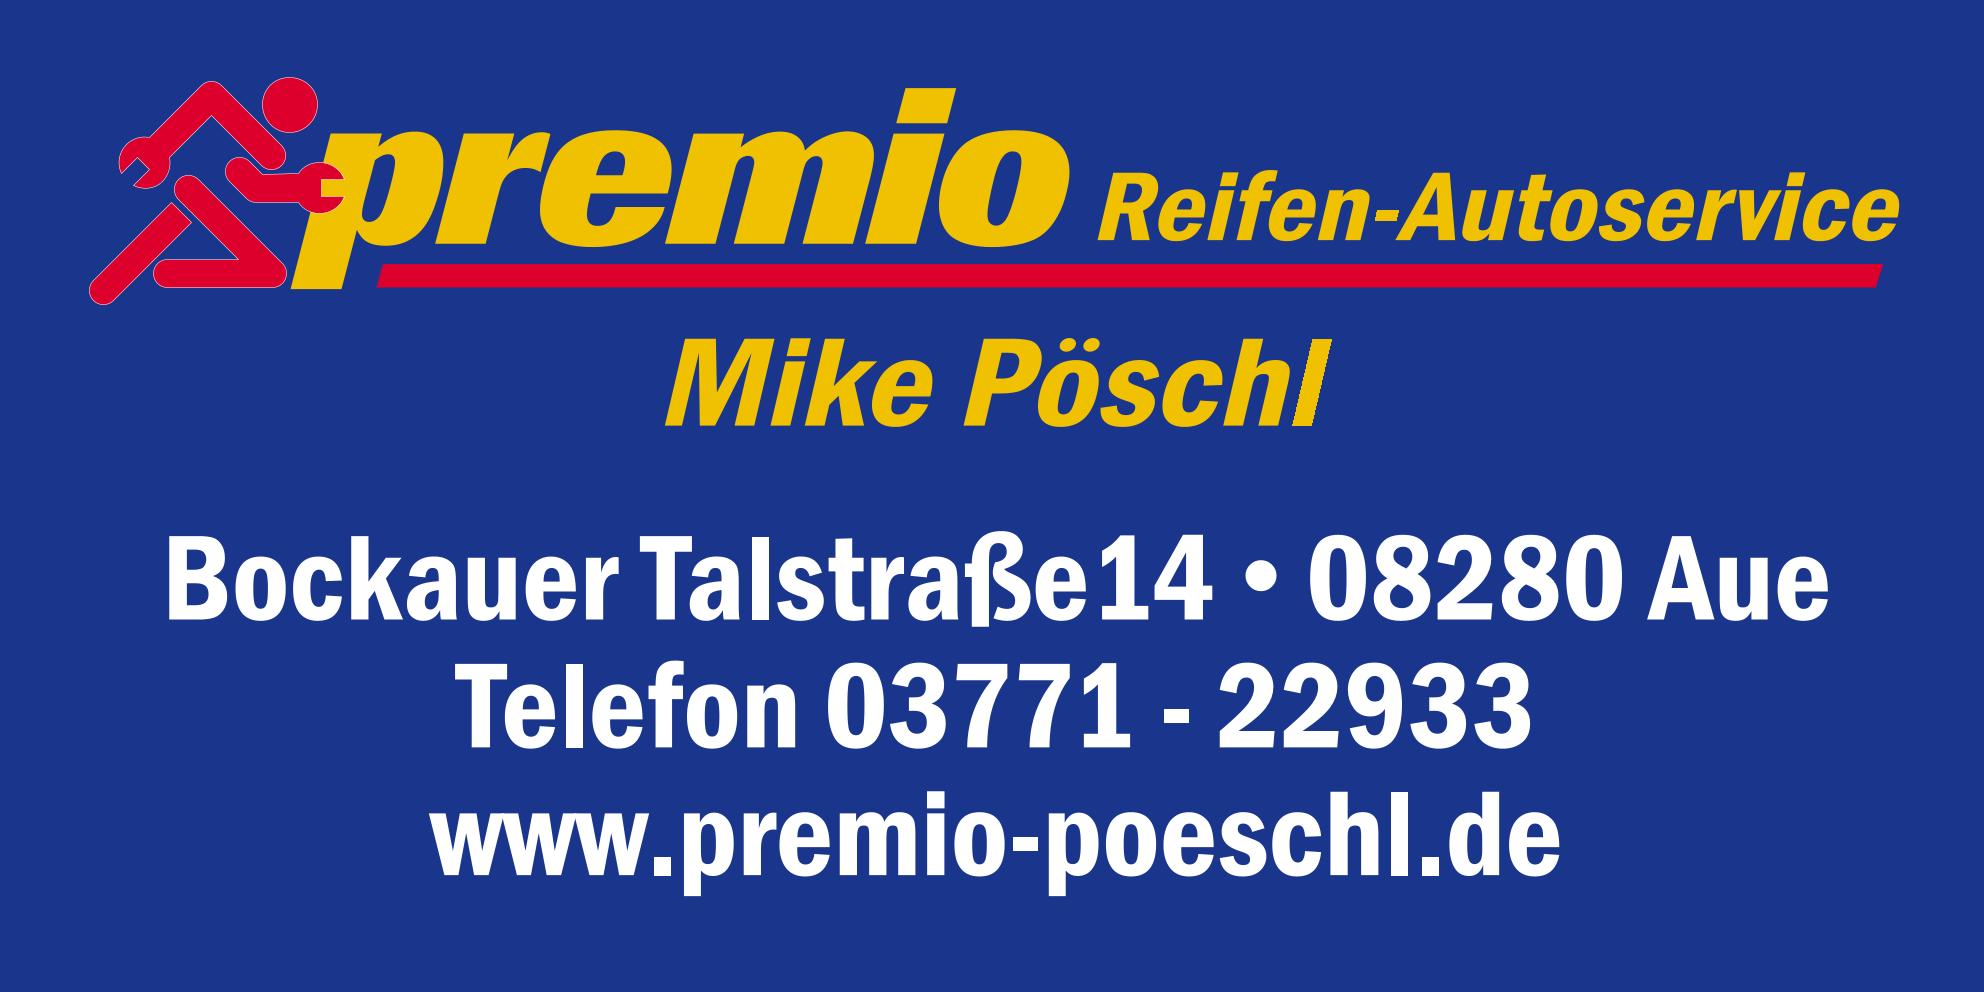 Fahrwerk-Reifenservice Premio-Pöschl, Inhaber Mike Pöschl